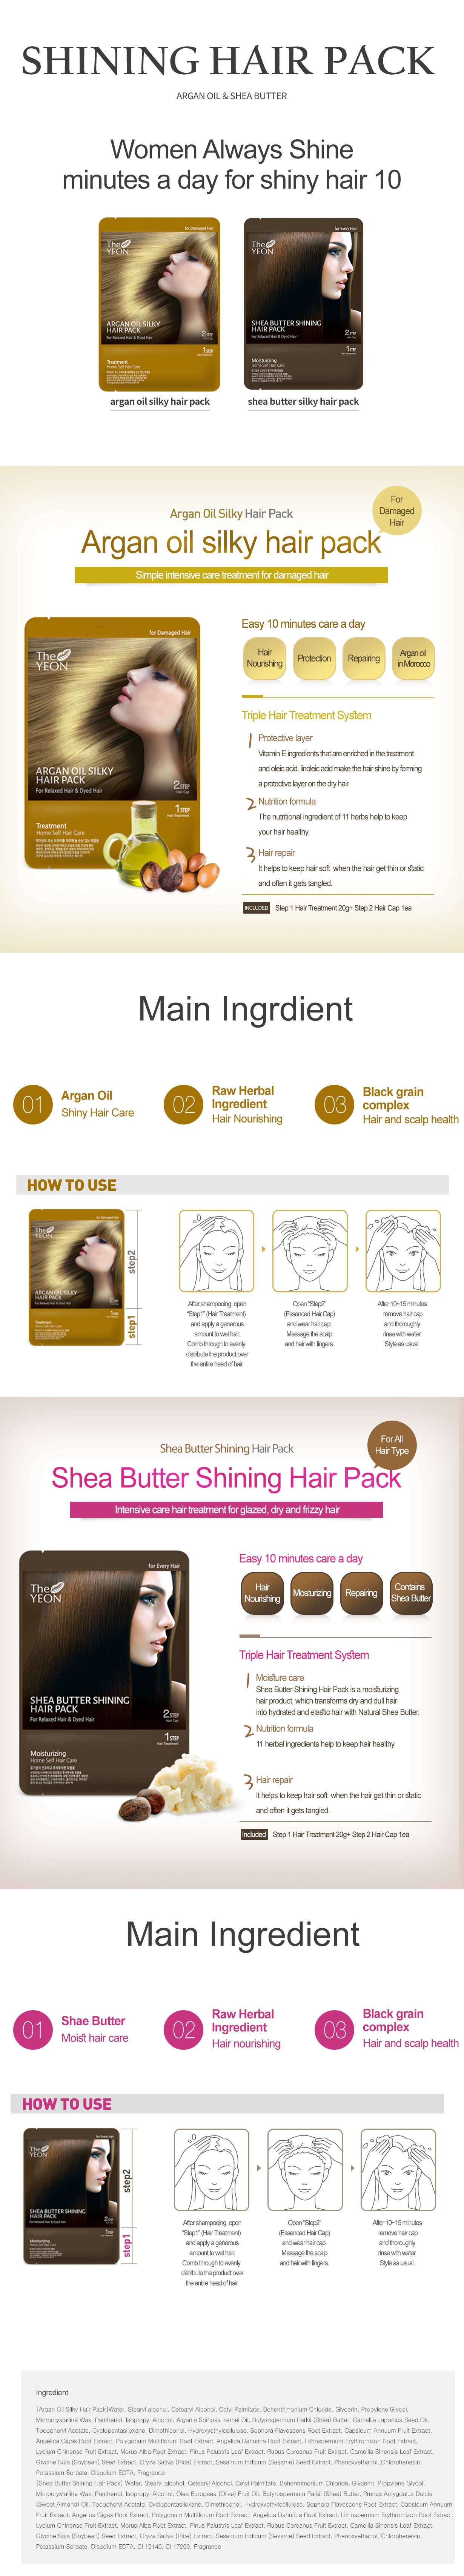 Shea Butter Shining Hair Pack 20g